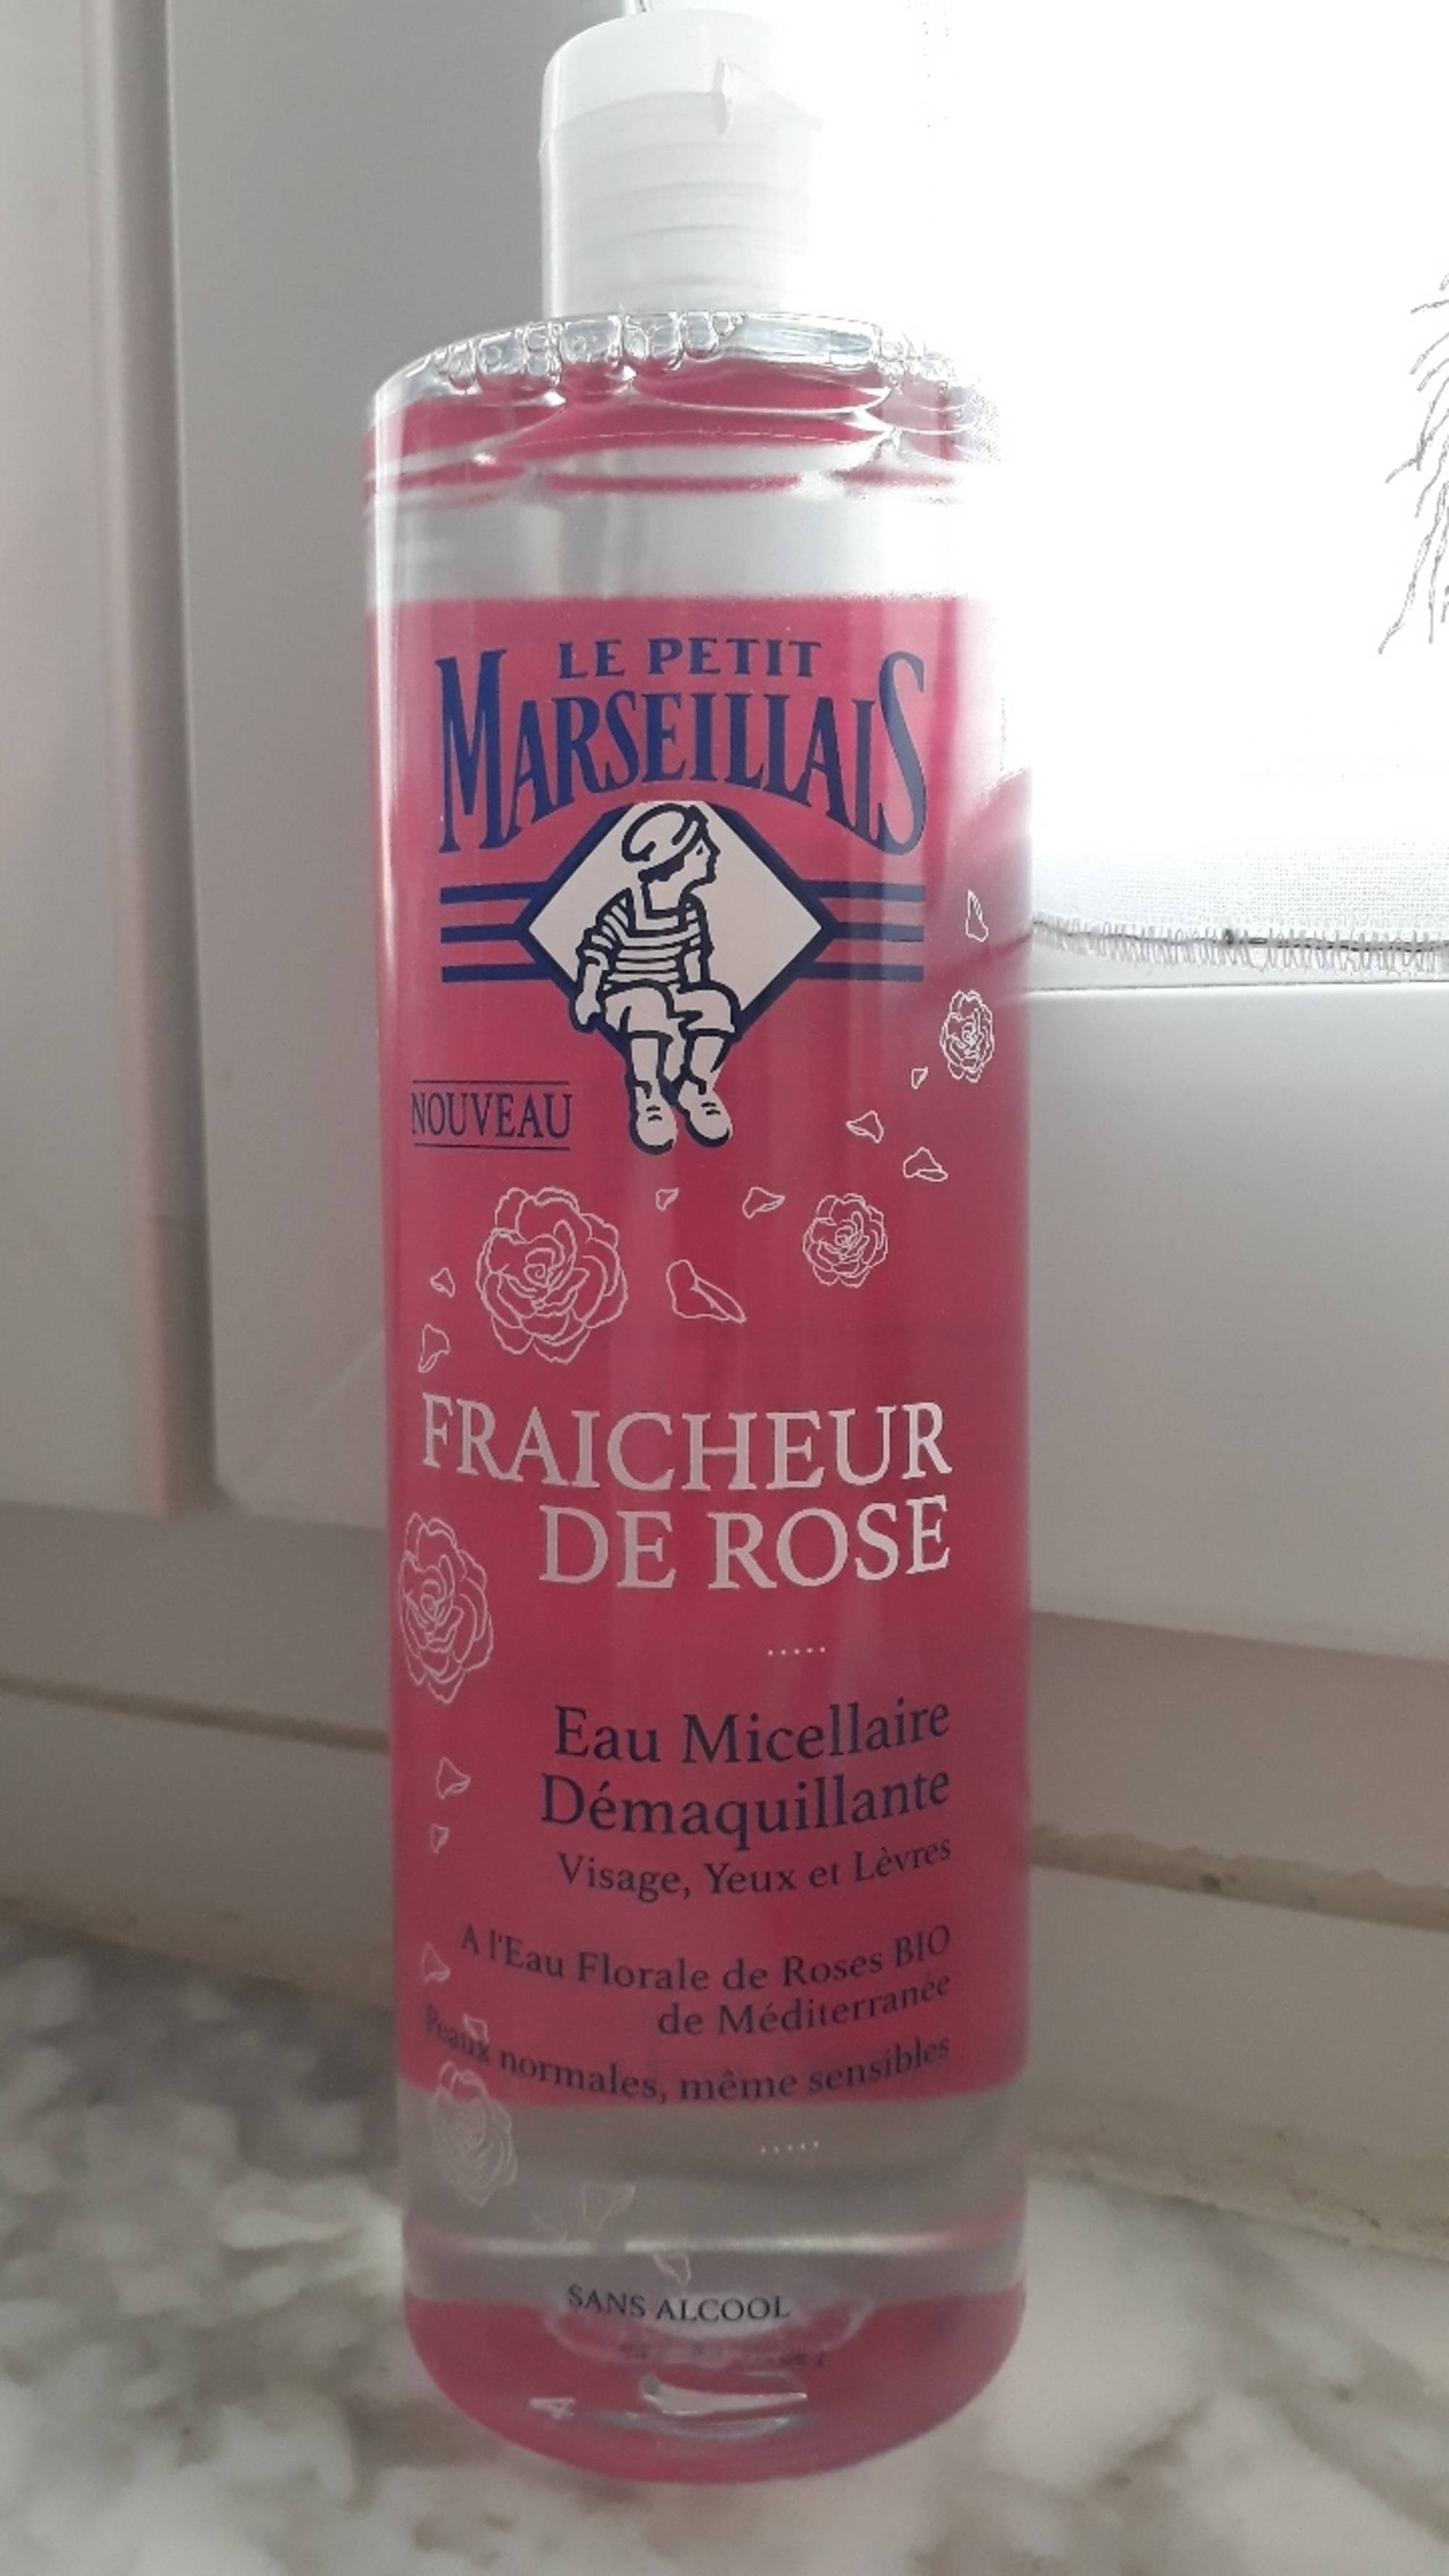 LE PETIT MARSEILLAIS - Fraîcheur de rose - Eau micellaire démaquillante